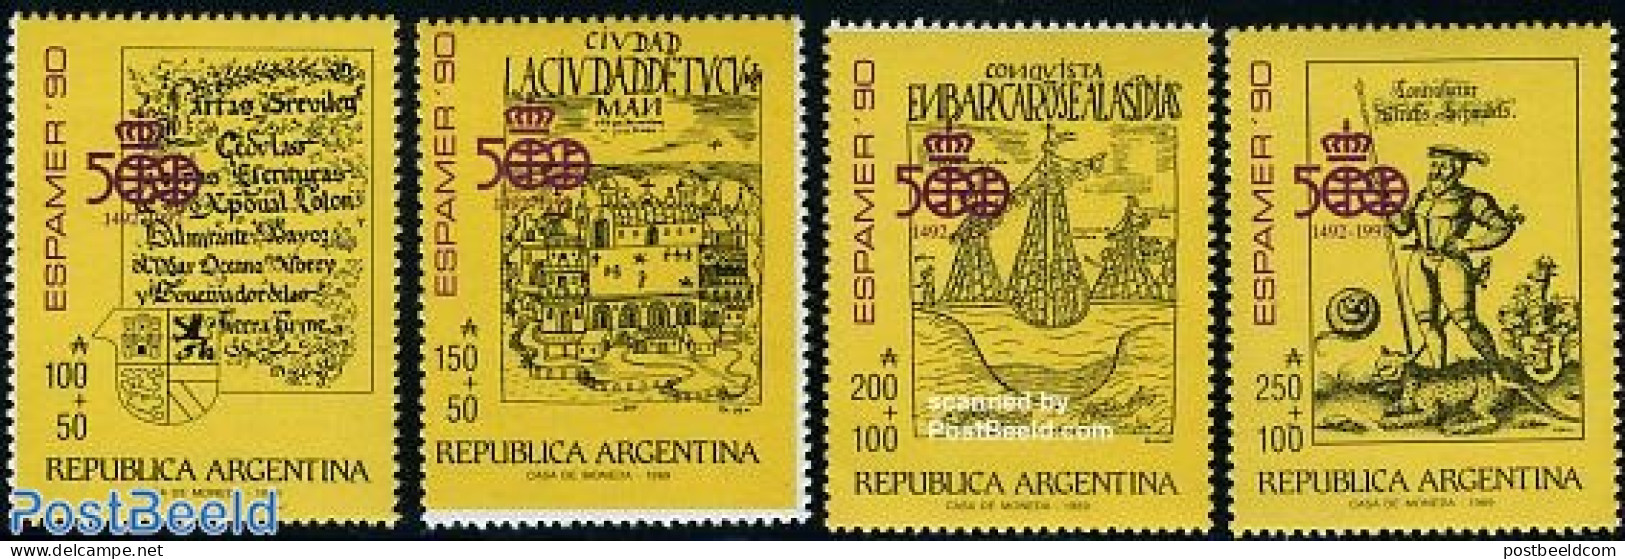 Argentina 1989 Espamer 4v, Mint NH, Art - Books - Unused Stamps